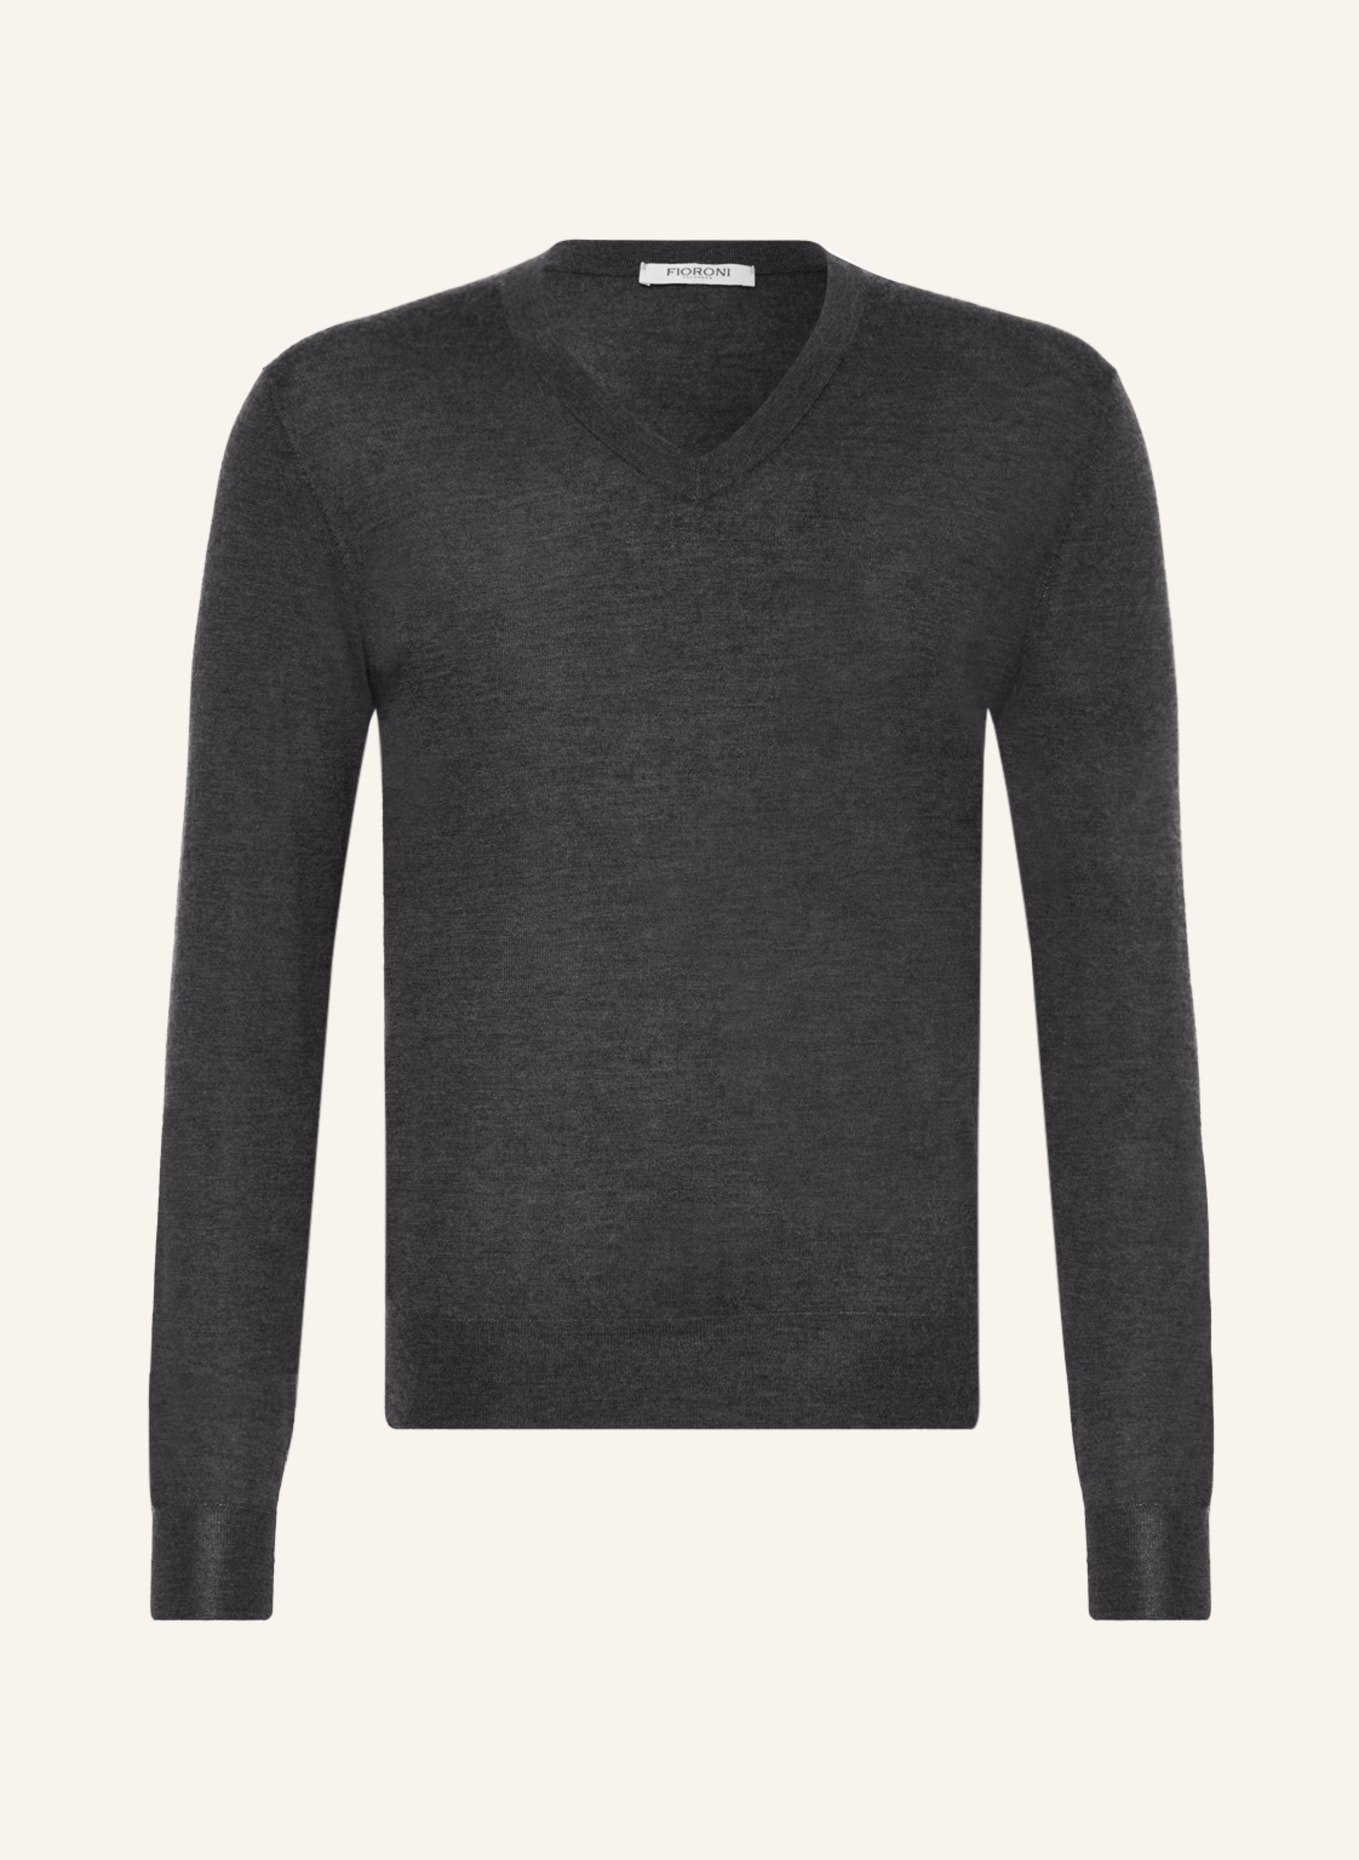 FIORONI Cashmere-Pullover, Farbe: DUNKELGRAU (Bild 1)